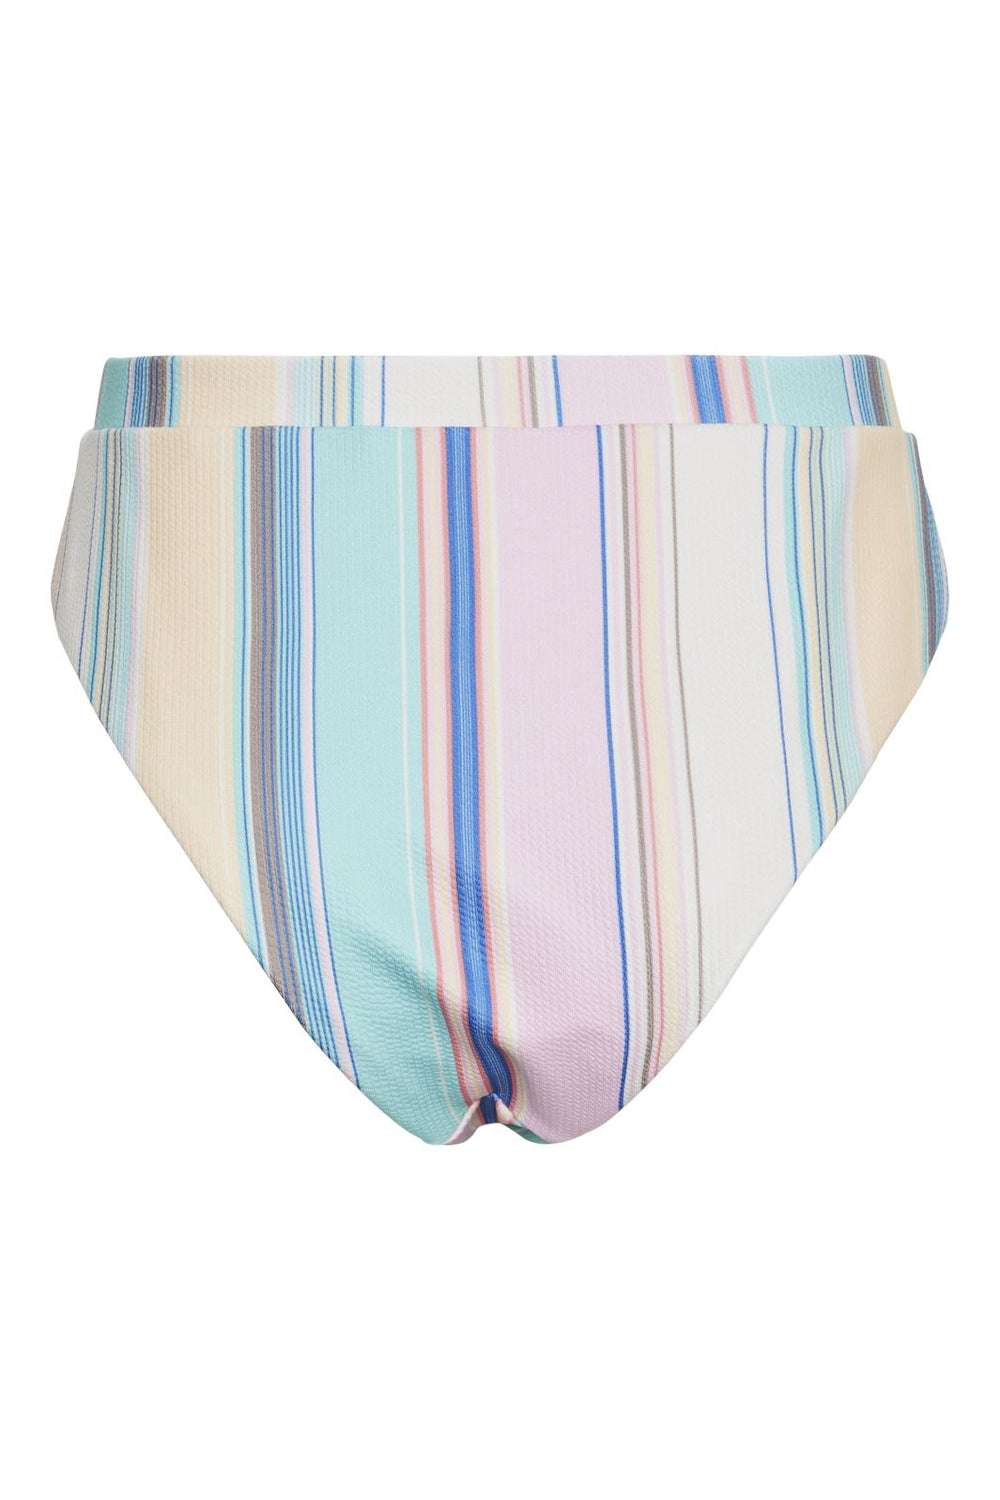 Pieces - Pcaia Bikini Brazil Sww - 4430942 Eggnog Multi Color Stripe